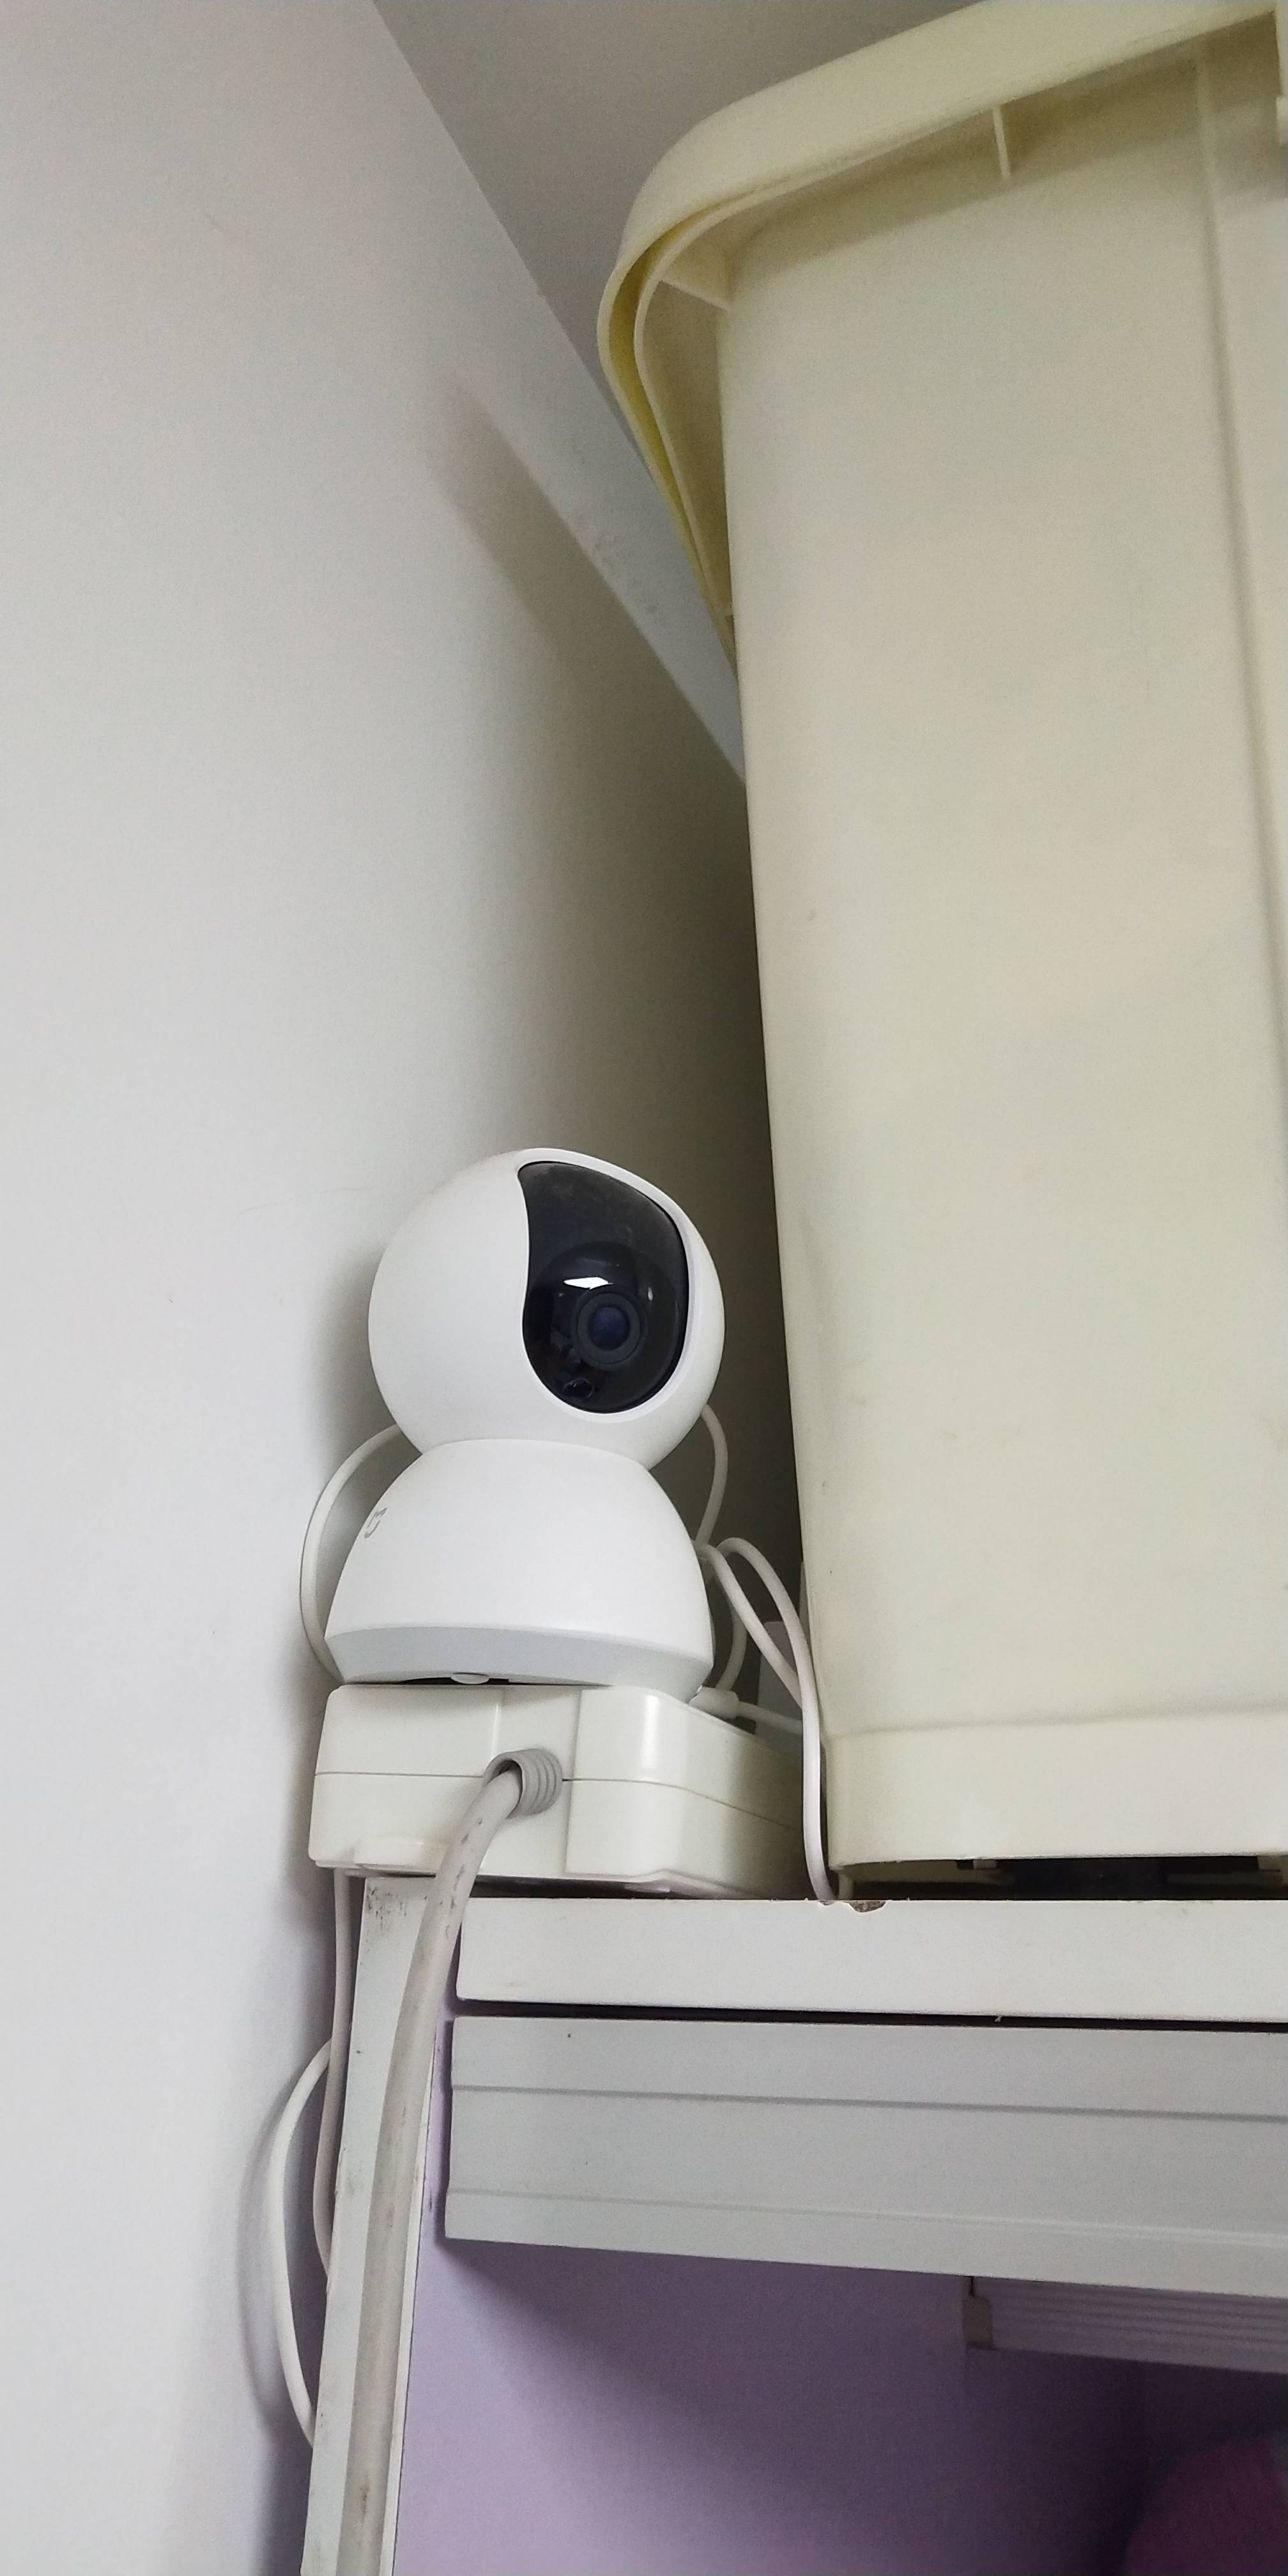 家用监控高清360度红外夜视移动监测全景网络摄像头无线远程手机遥控